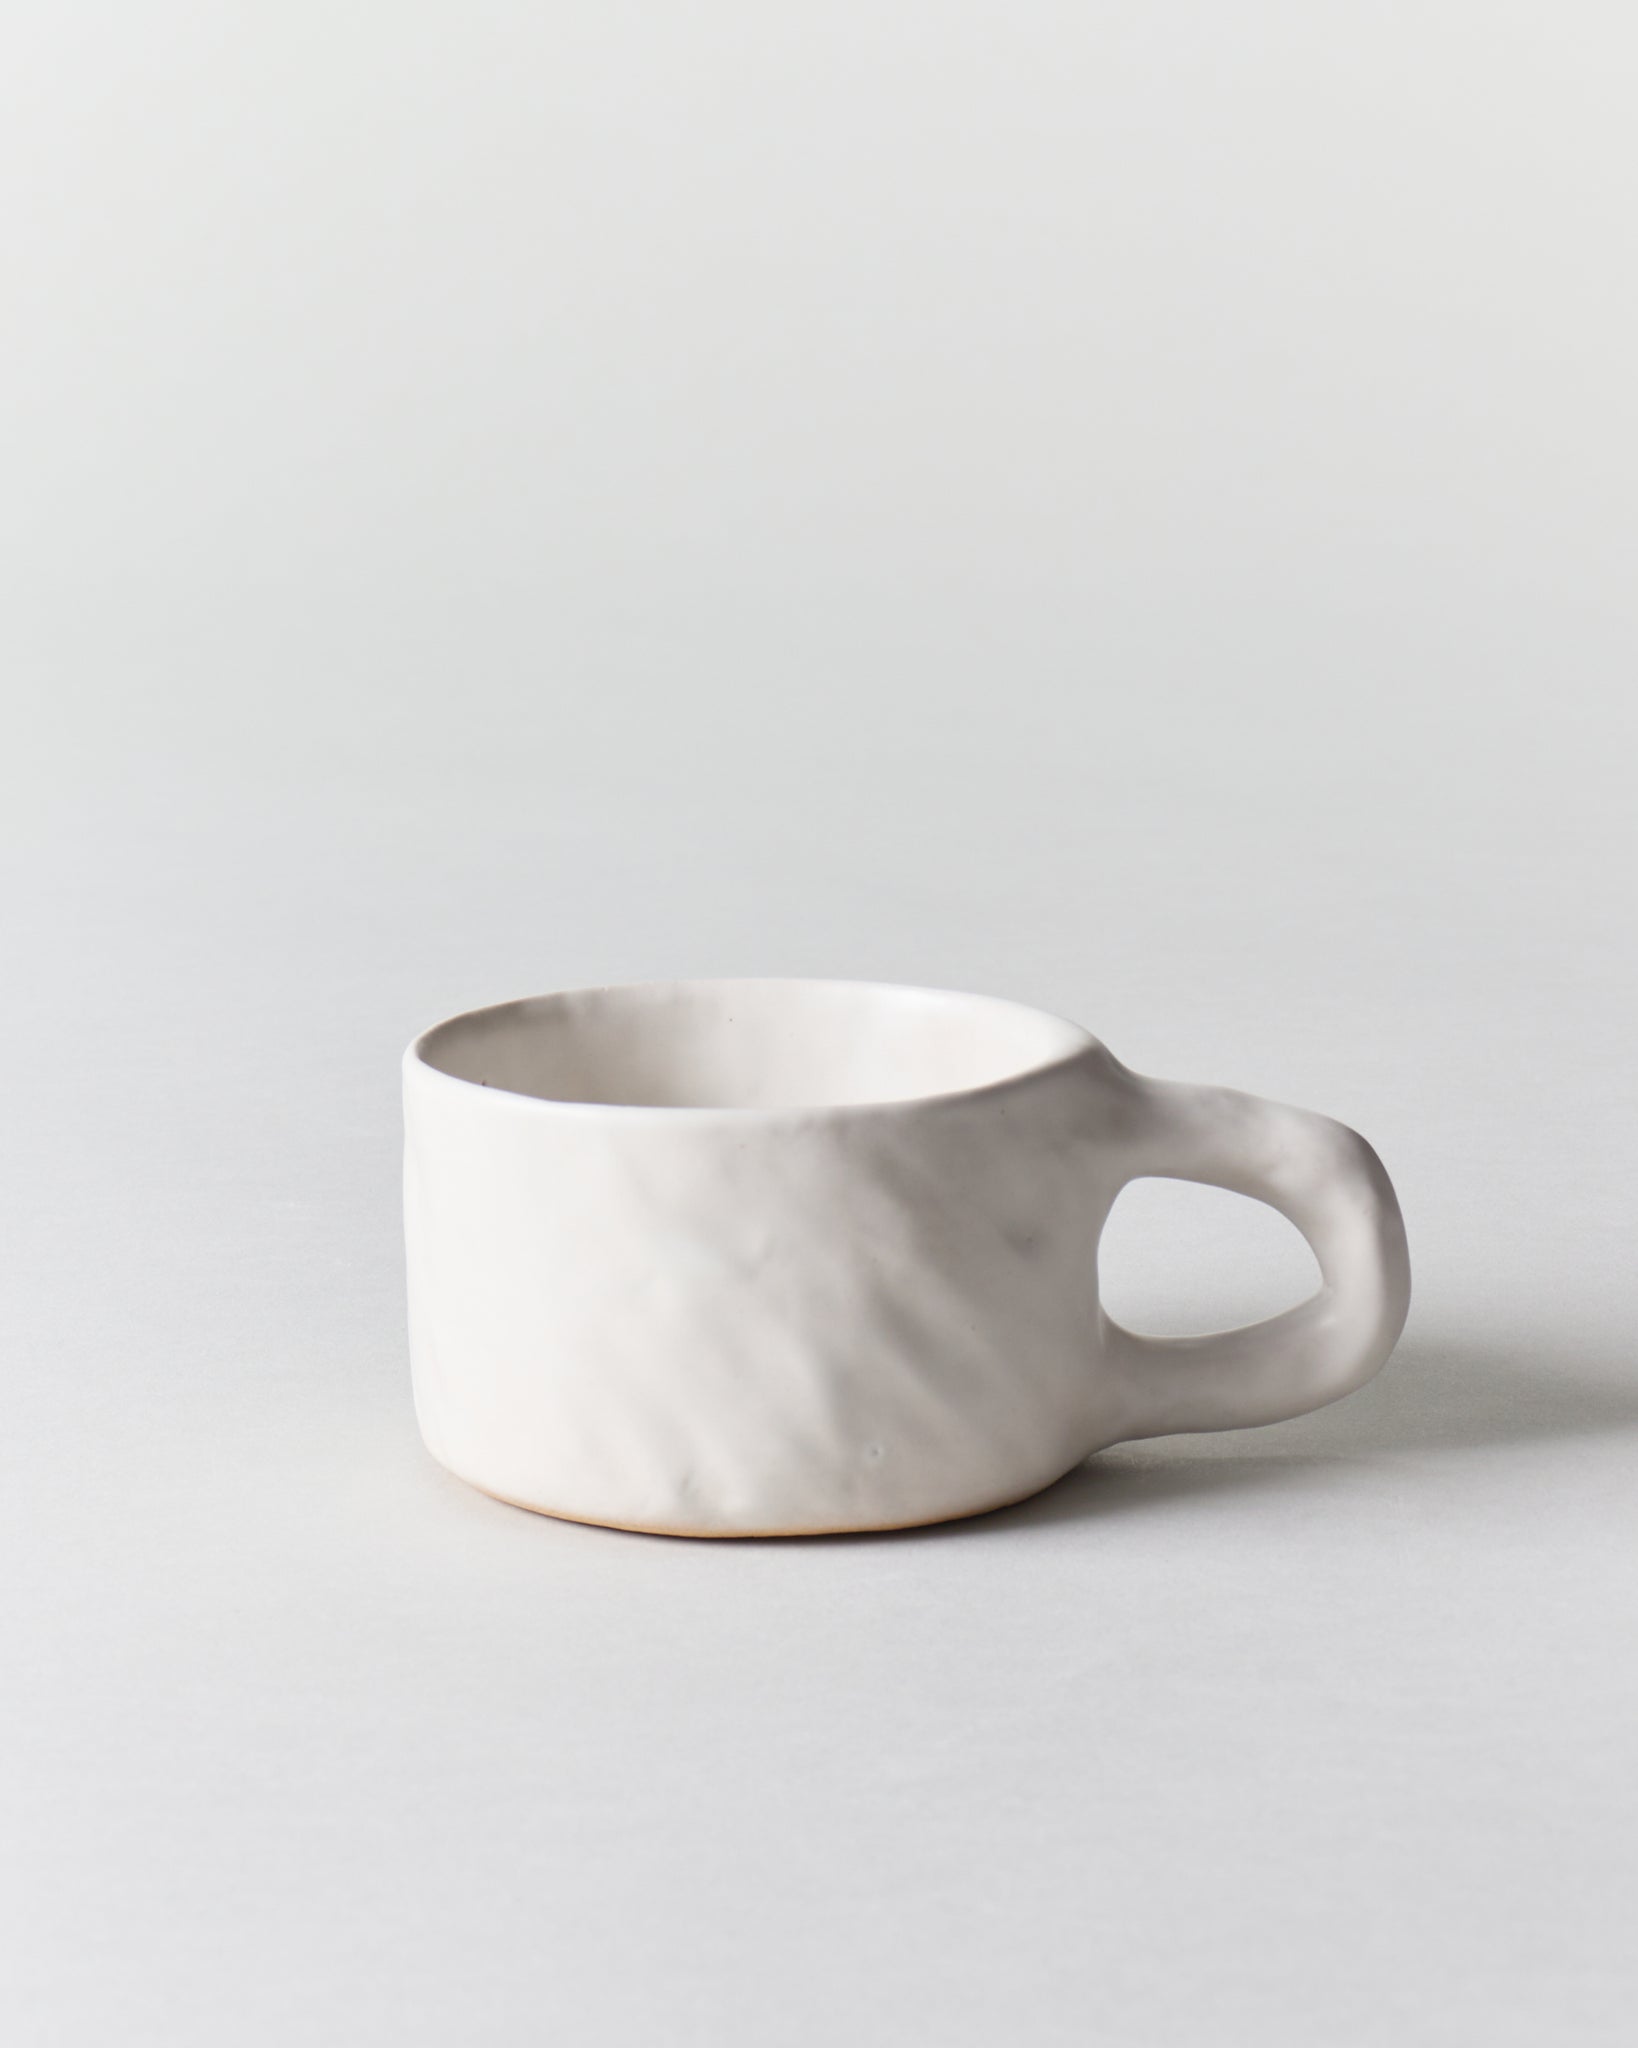 Short Mug in White